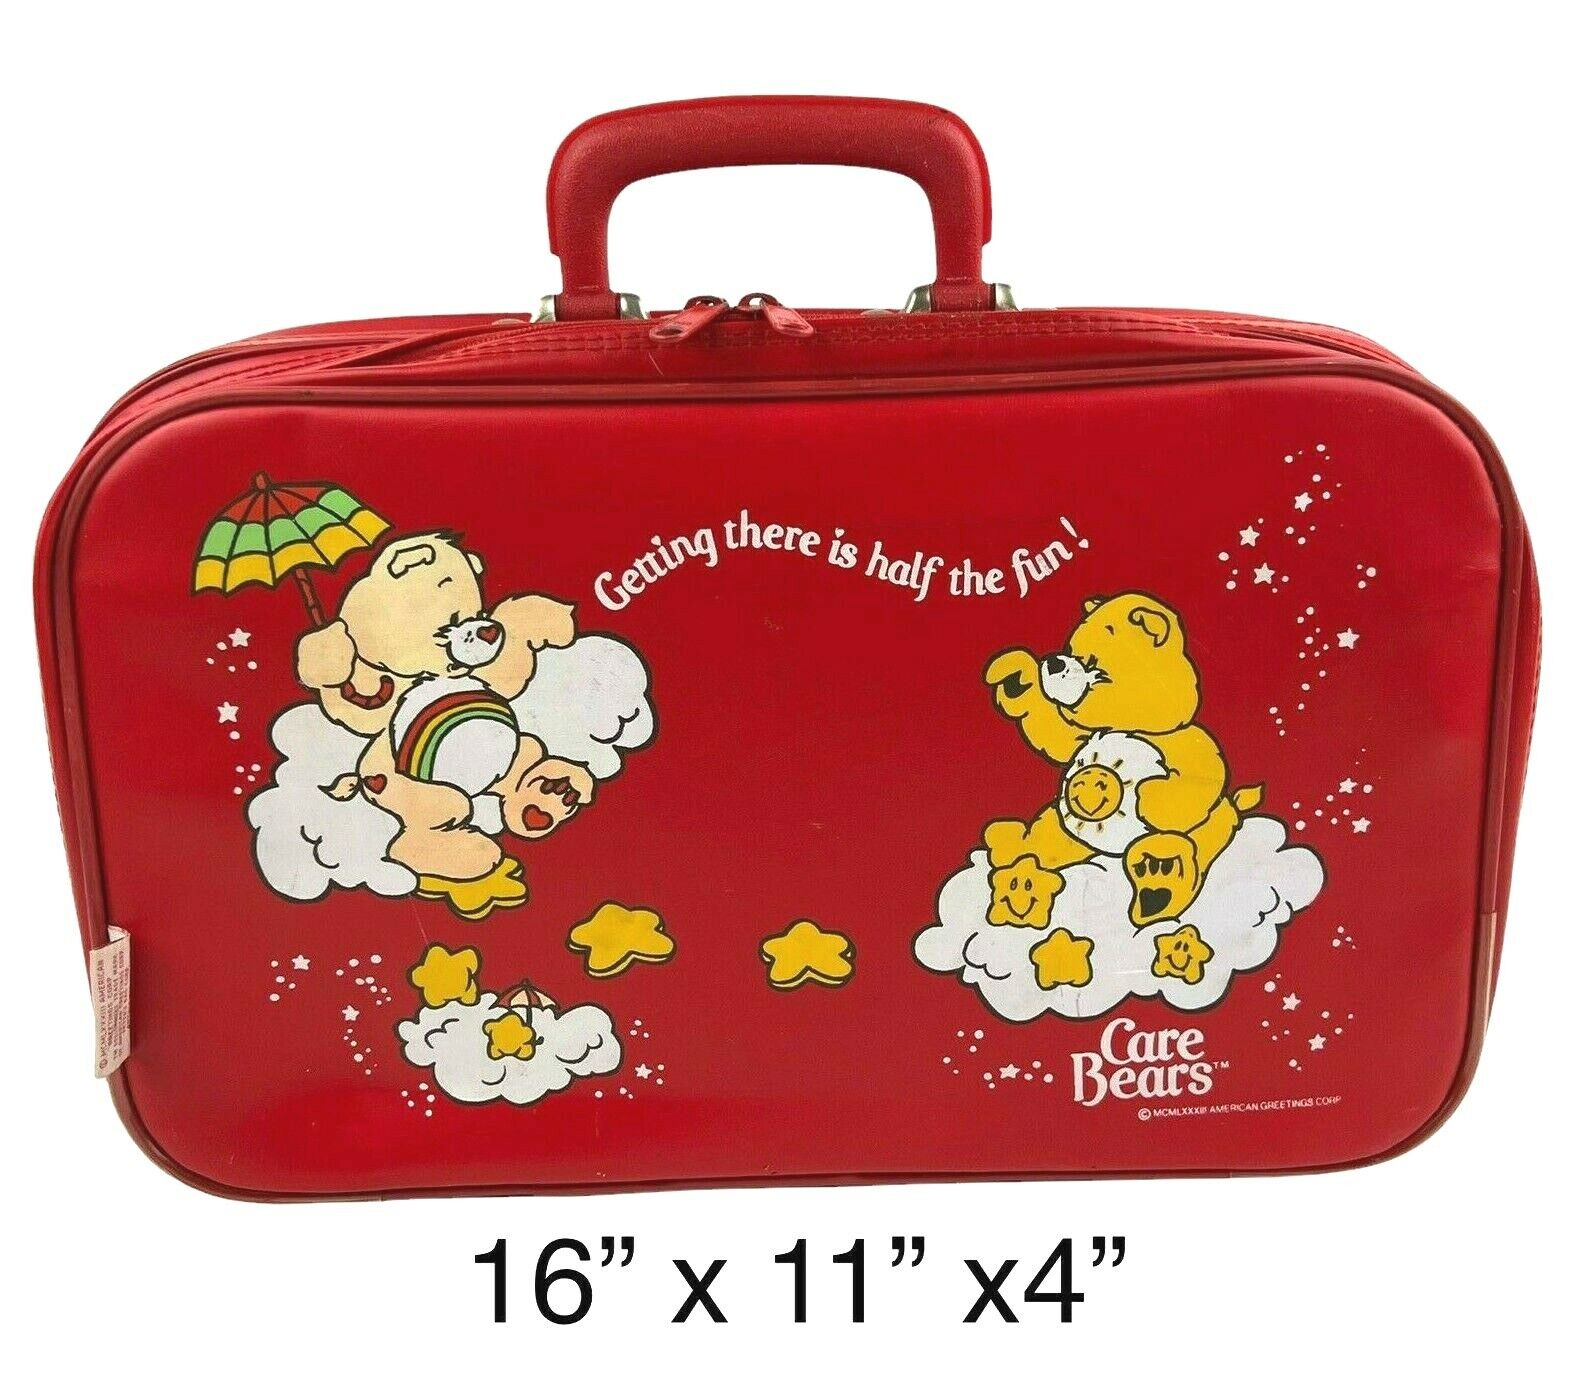 Care Bears 1983 Red Vinyl Suitcase Kids Luggage 16 x 11 x 4 Peters Bag Vintage